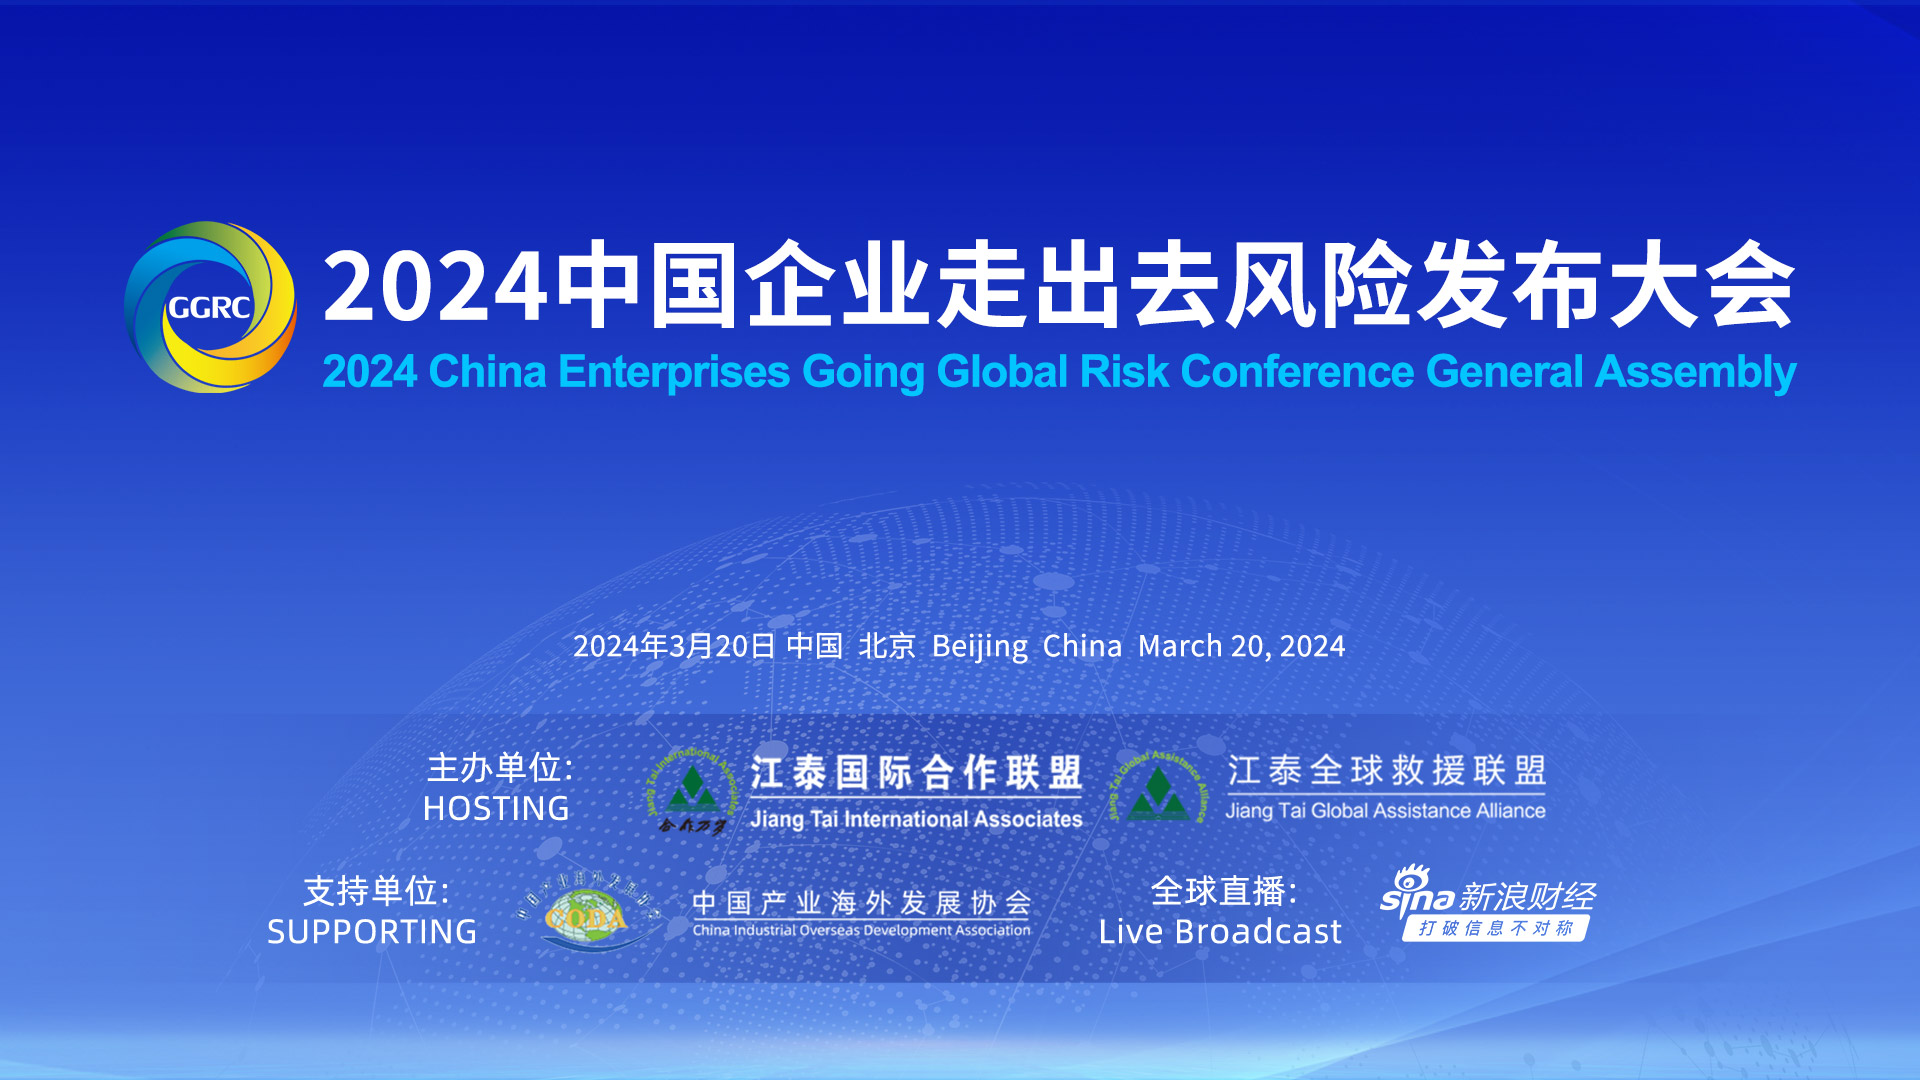 聚焦从风险出发 在风控中发现对外投资合作商机 ——第十届中国企业“走出去”风险发布会在京举行